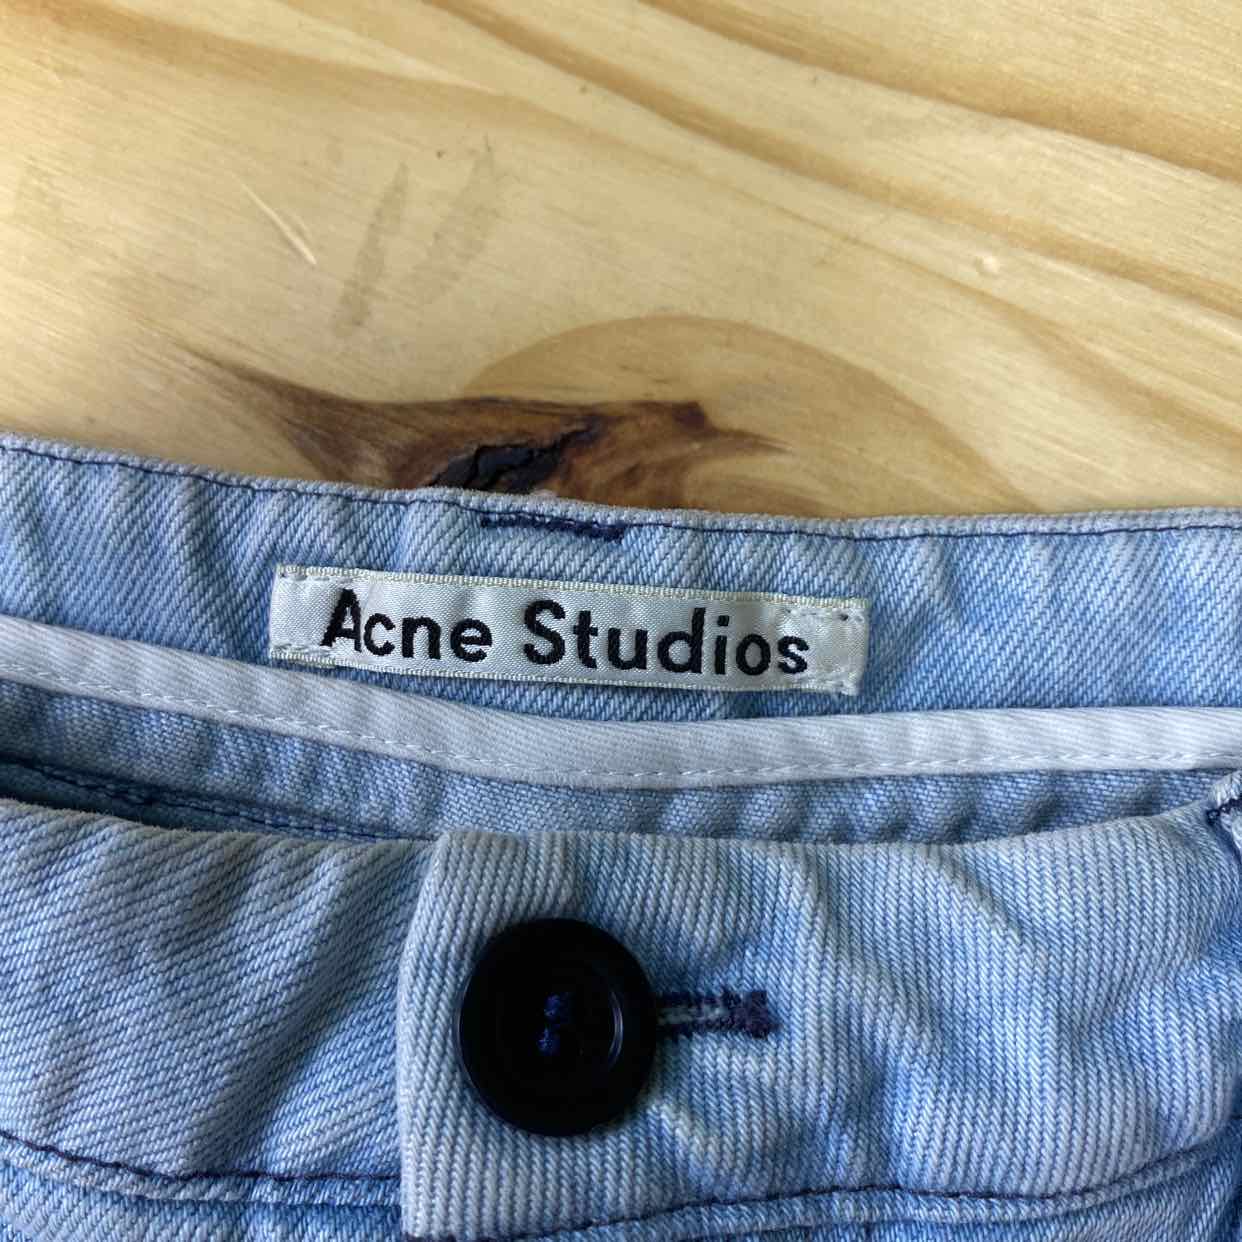 Acne Studios Shorts &quot;DENIM&quot; Light Blue Used Size 48